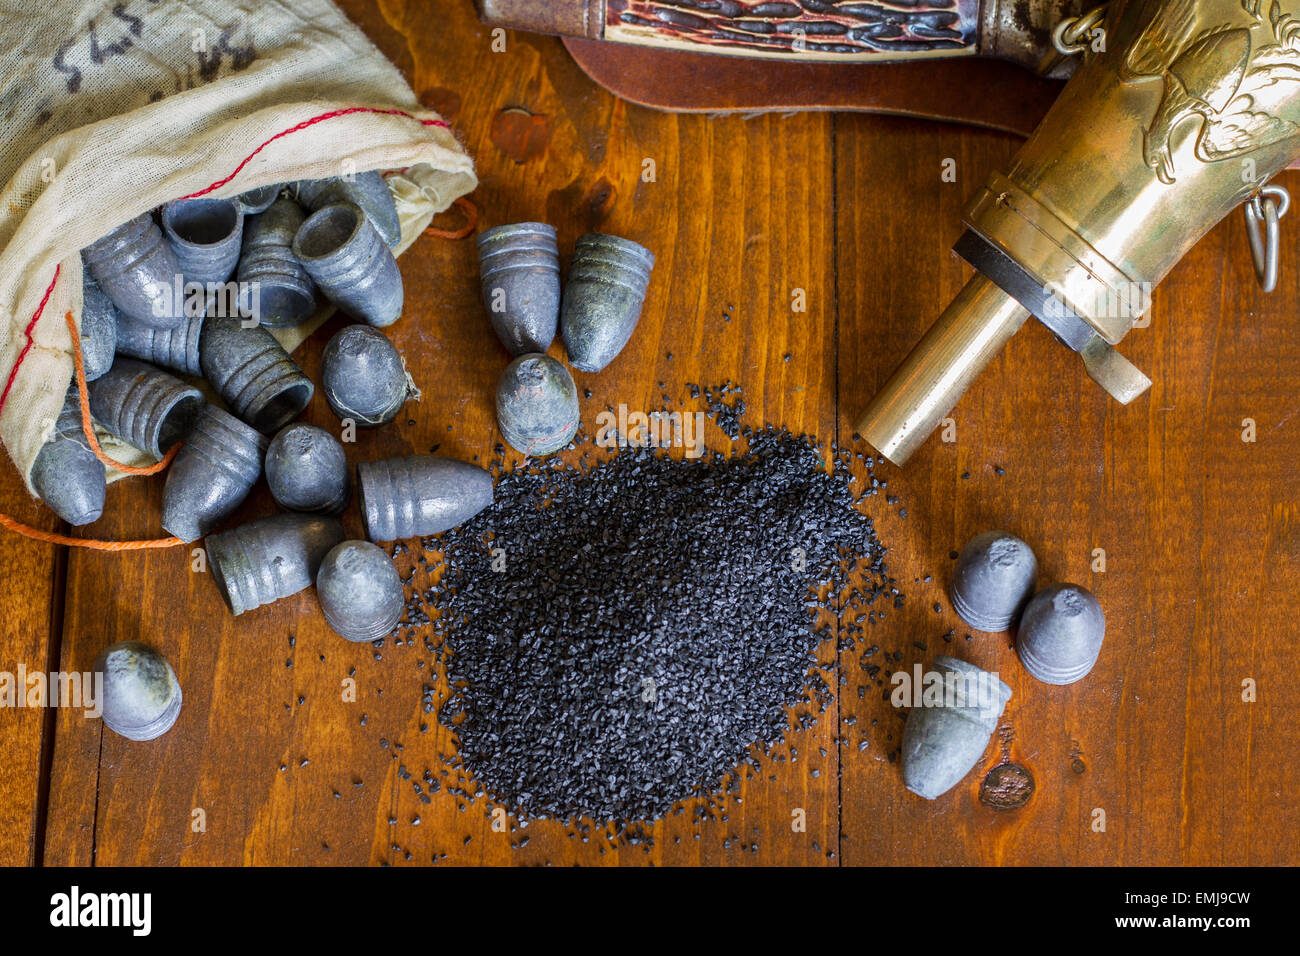 Polvere nera immagini e fotografie stock ad alta risoluzione - Alamy